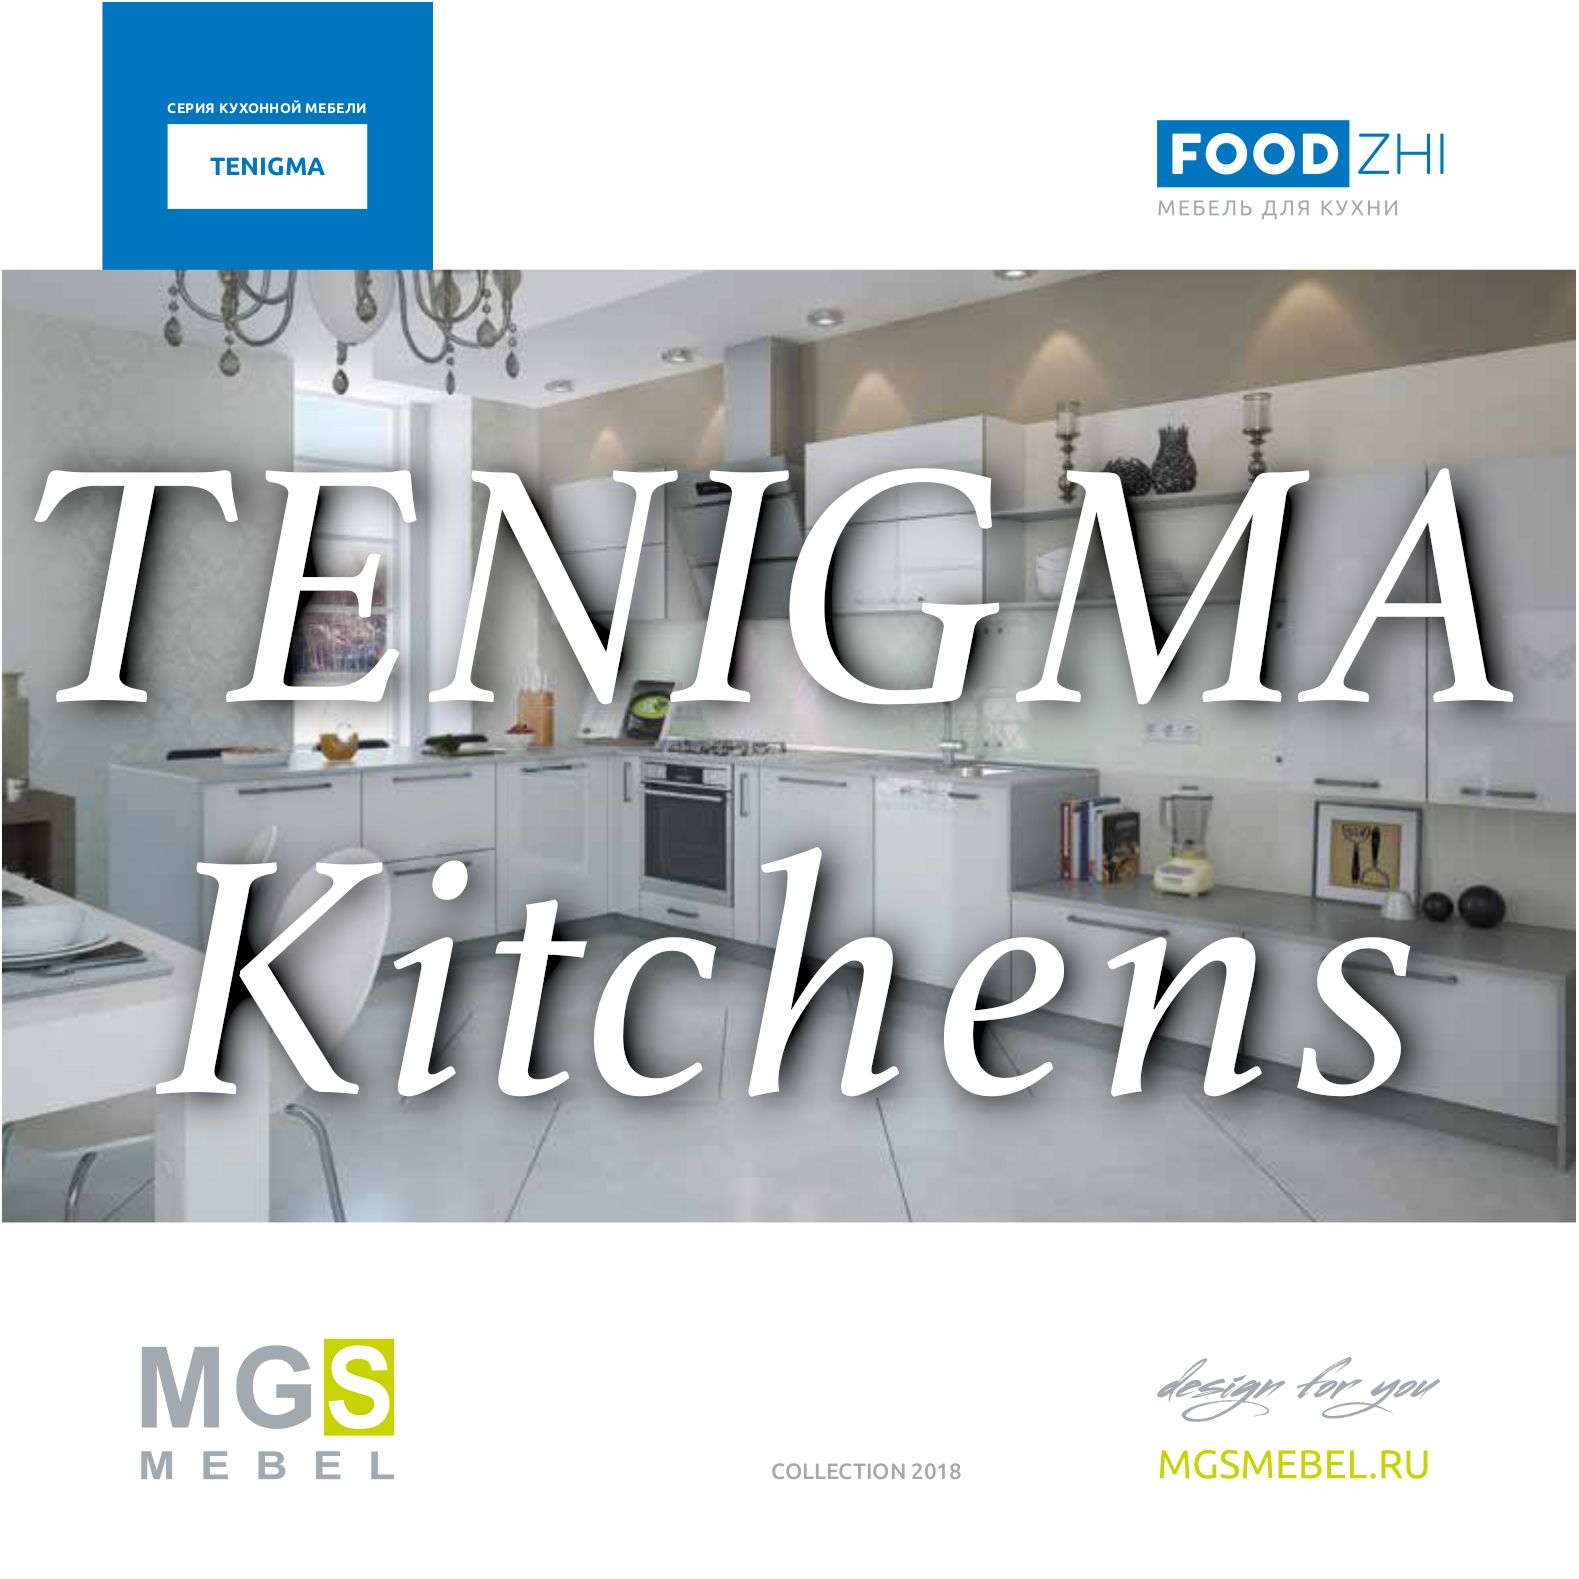 Katalog MGS Kitchens TENIGMA